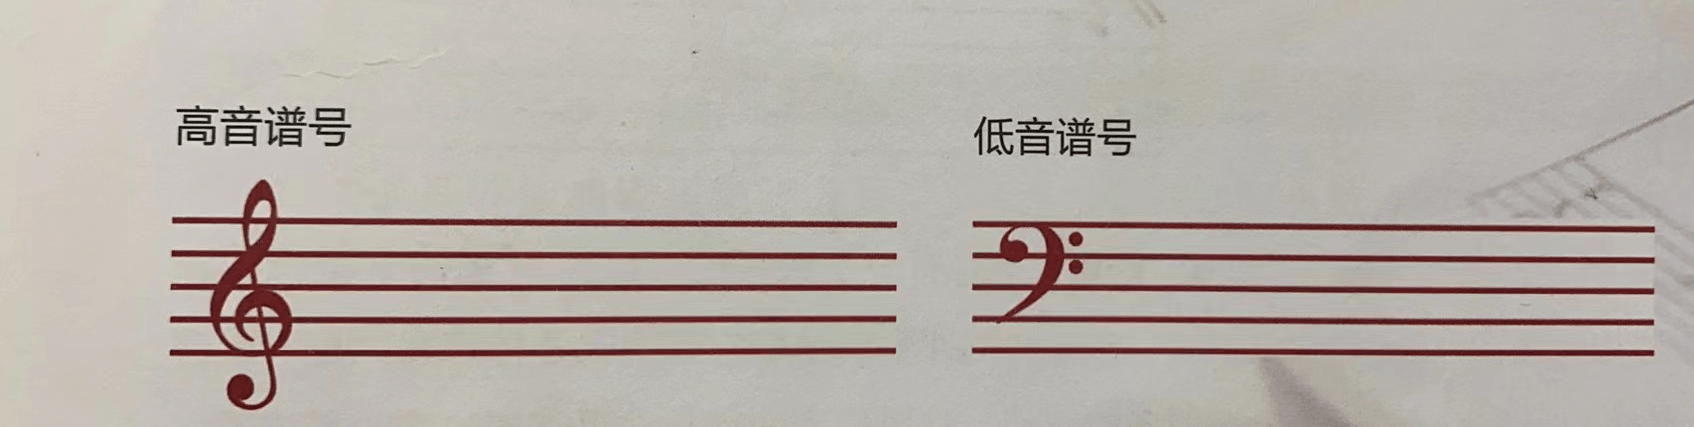 五线谱上经常出现两个符号(如下图),这两个符号是高音谱号和低音谱号